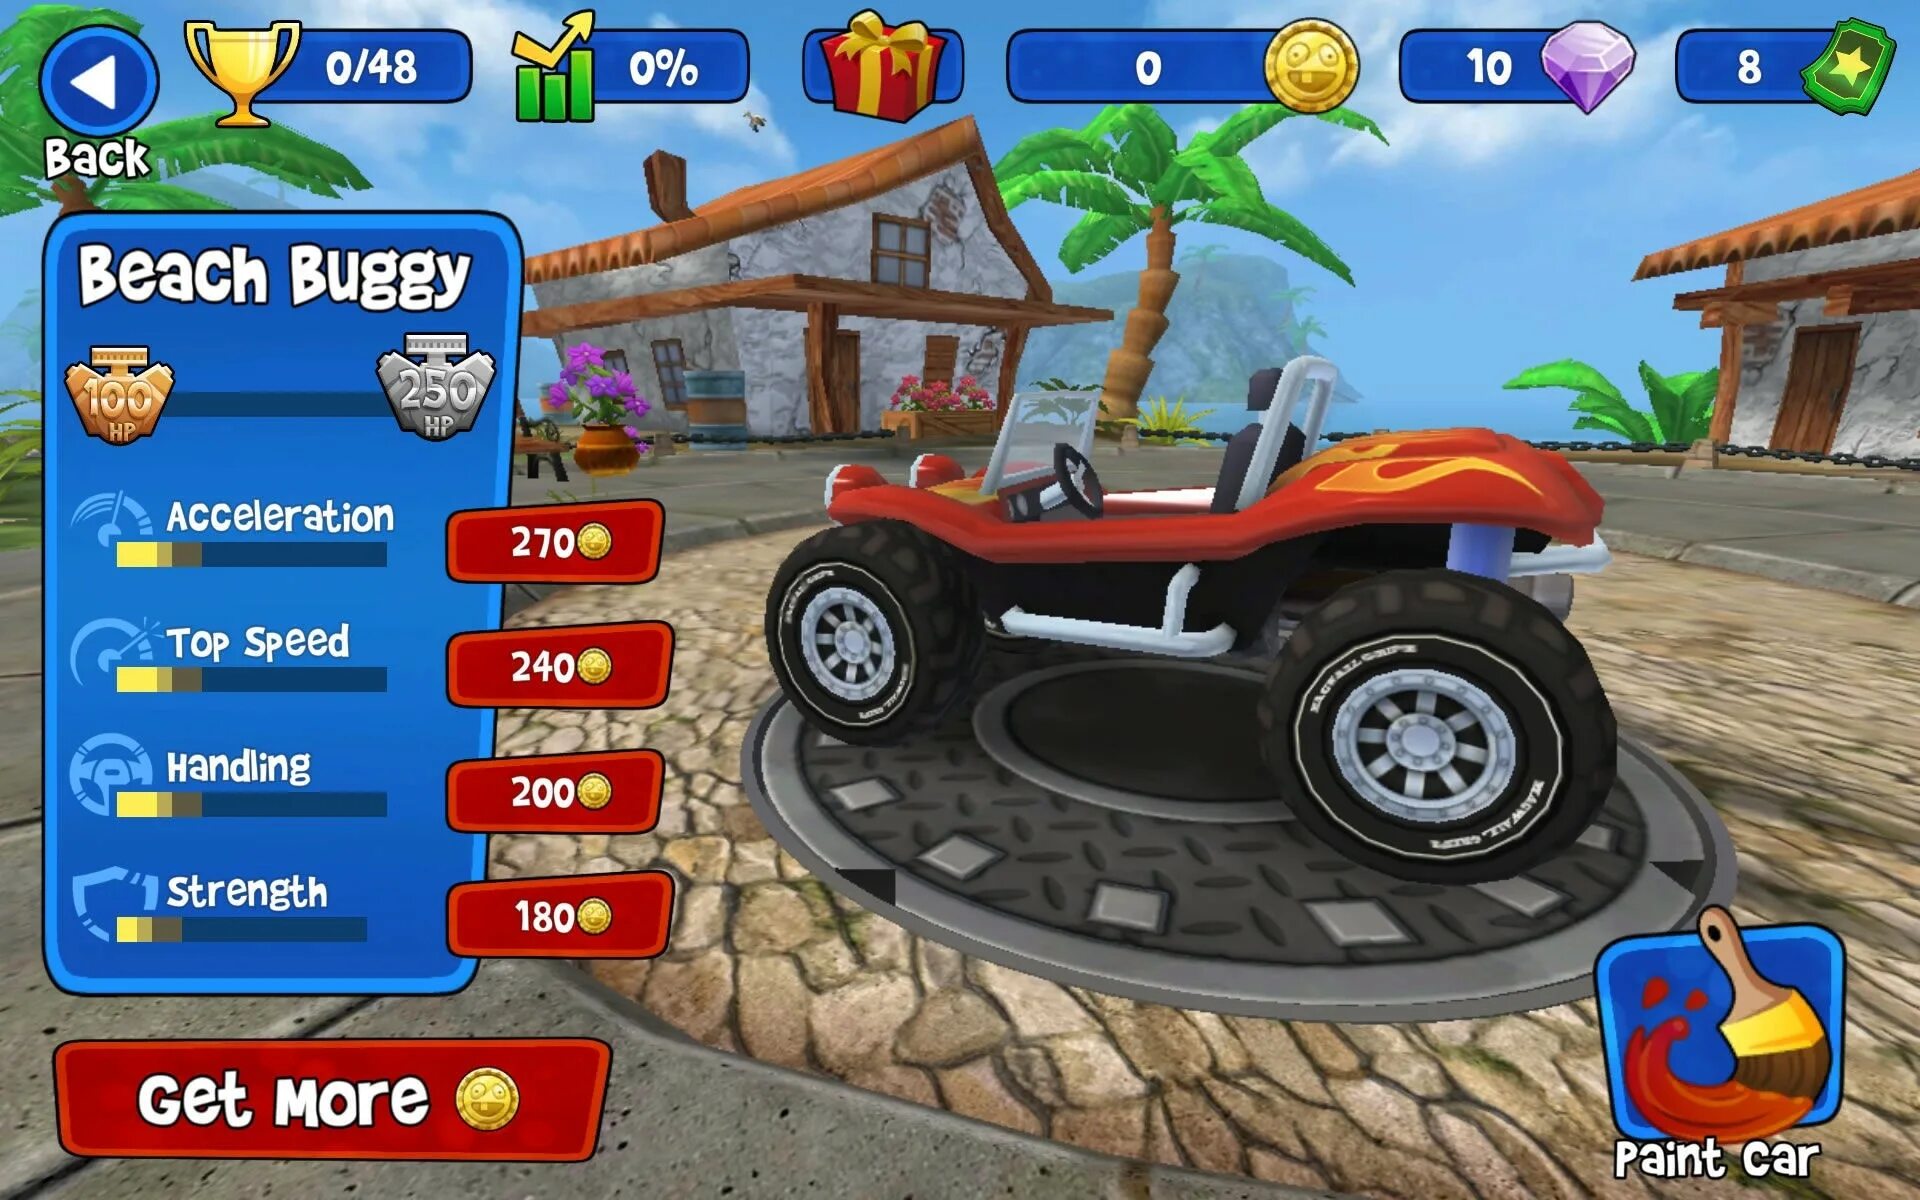 Buggy racing много денег. Бич багги Ракинг. Beach Buggy Racing 2: hot Wheels™ Edition. Beach Buggy Racing картинки. Бонусы в Бич багги рейсинг 2.